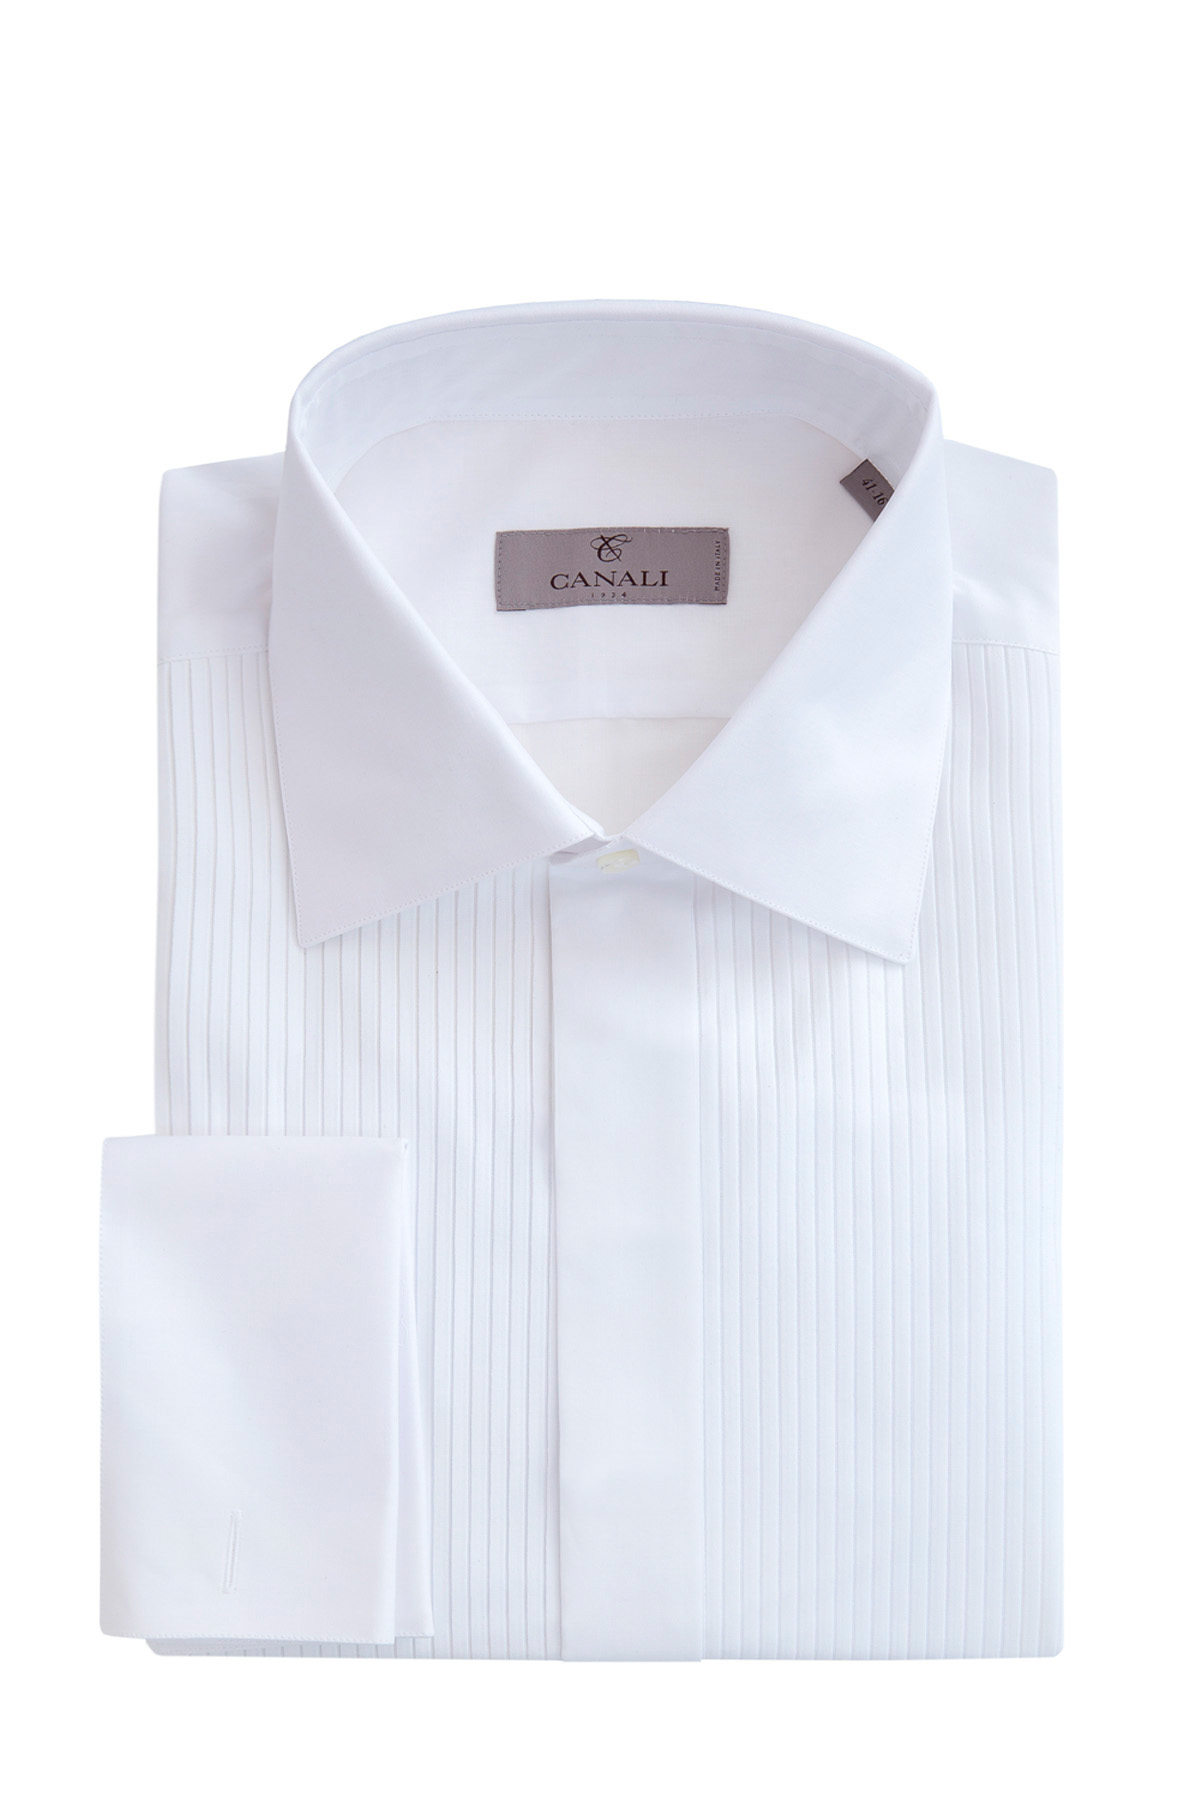 Классическая белая рубашка под смокинг CANALI, цвет белый, размер 58 - фото 1